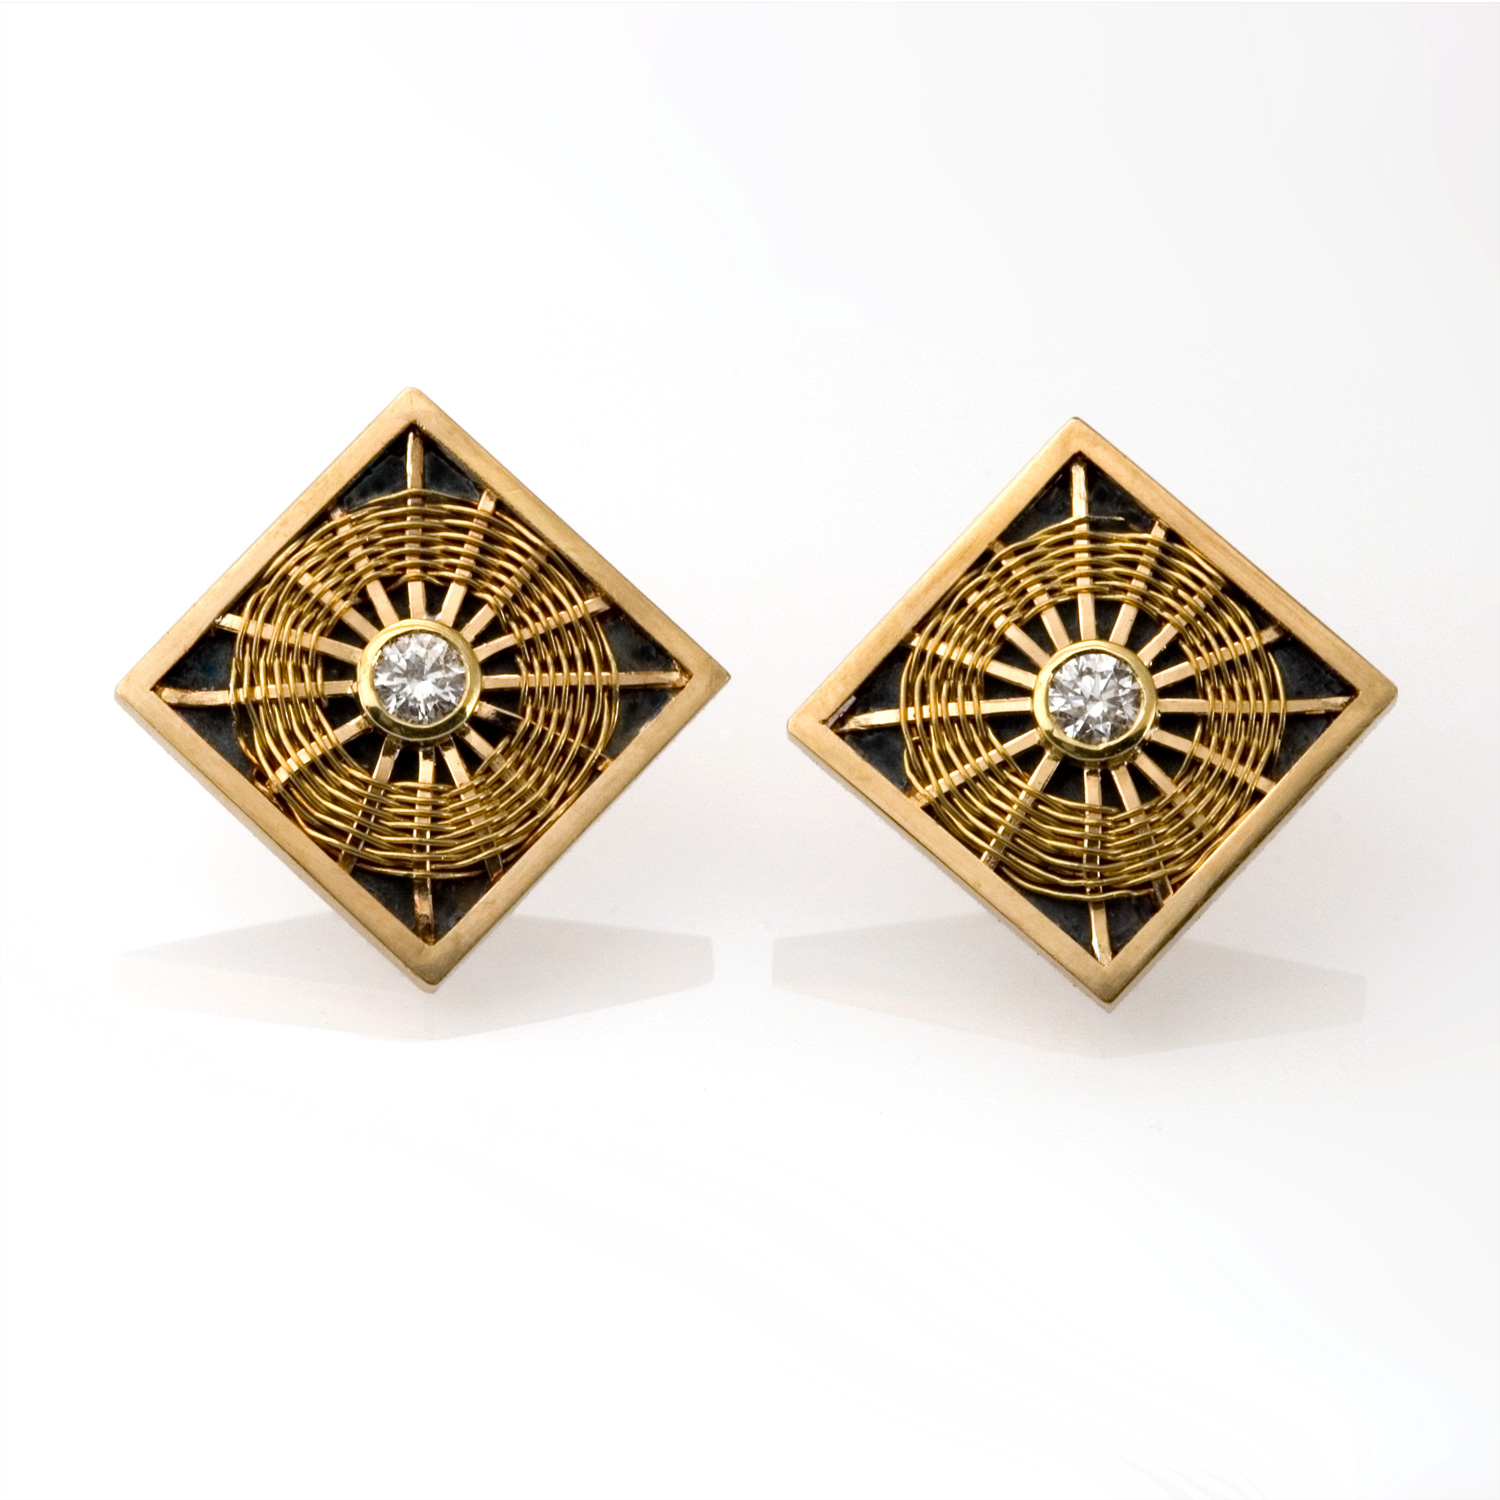 Sunburst Weave Earrings in 18k gold by Tamberlaine